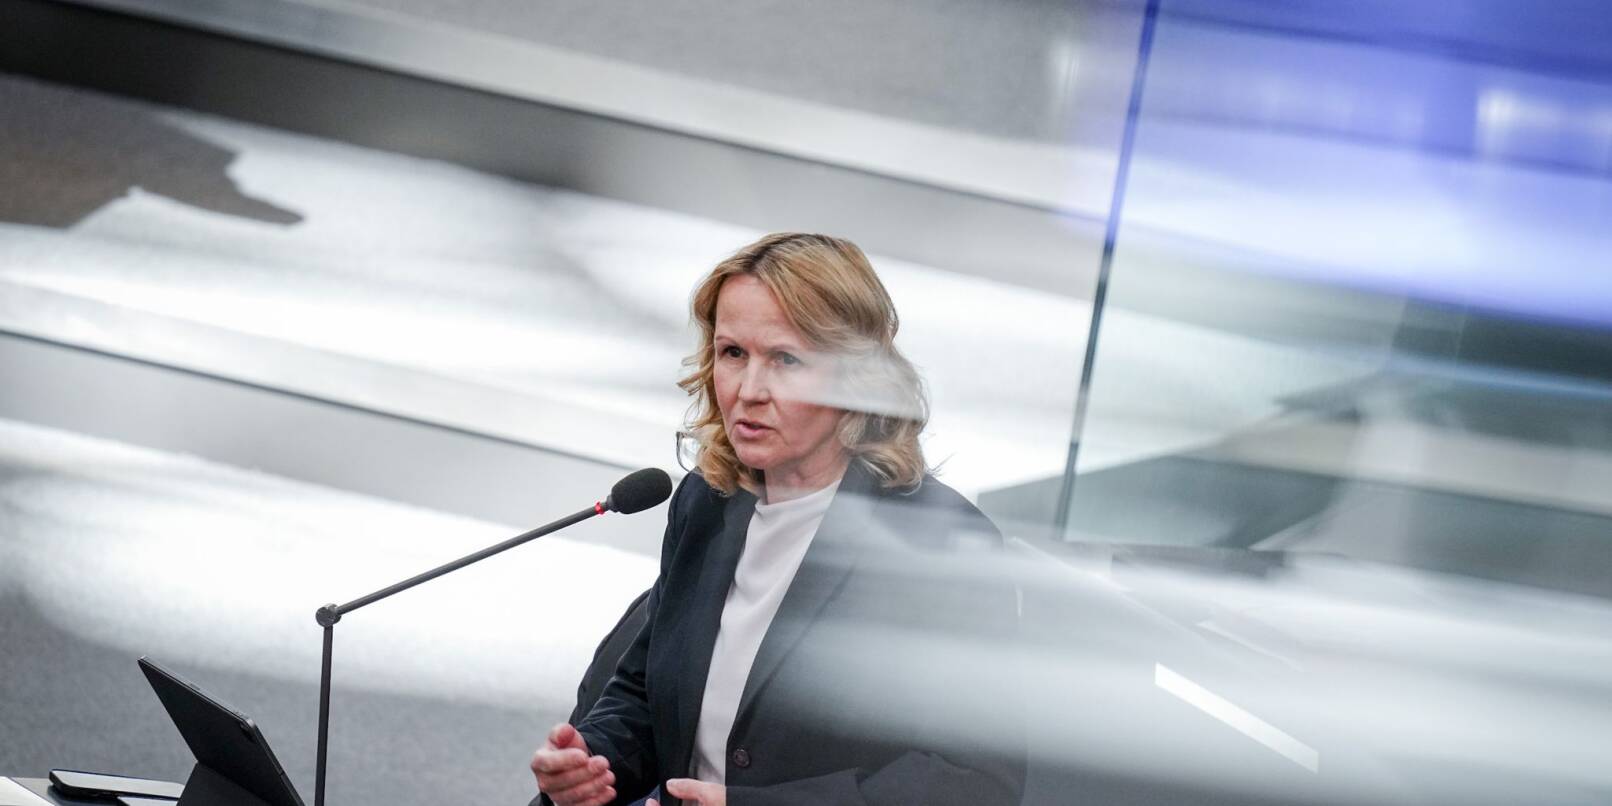 Umweltministerin Steffi Lemke plädiert für eine sorgfältige Debatte zu Klimaschutzthemen.